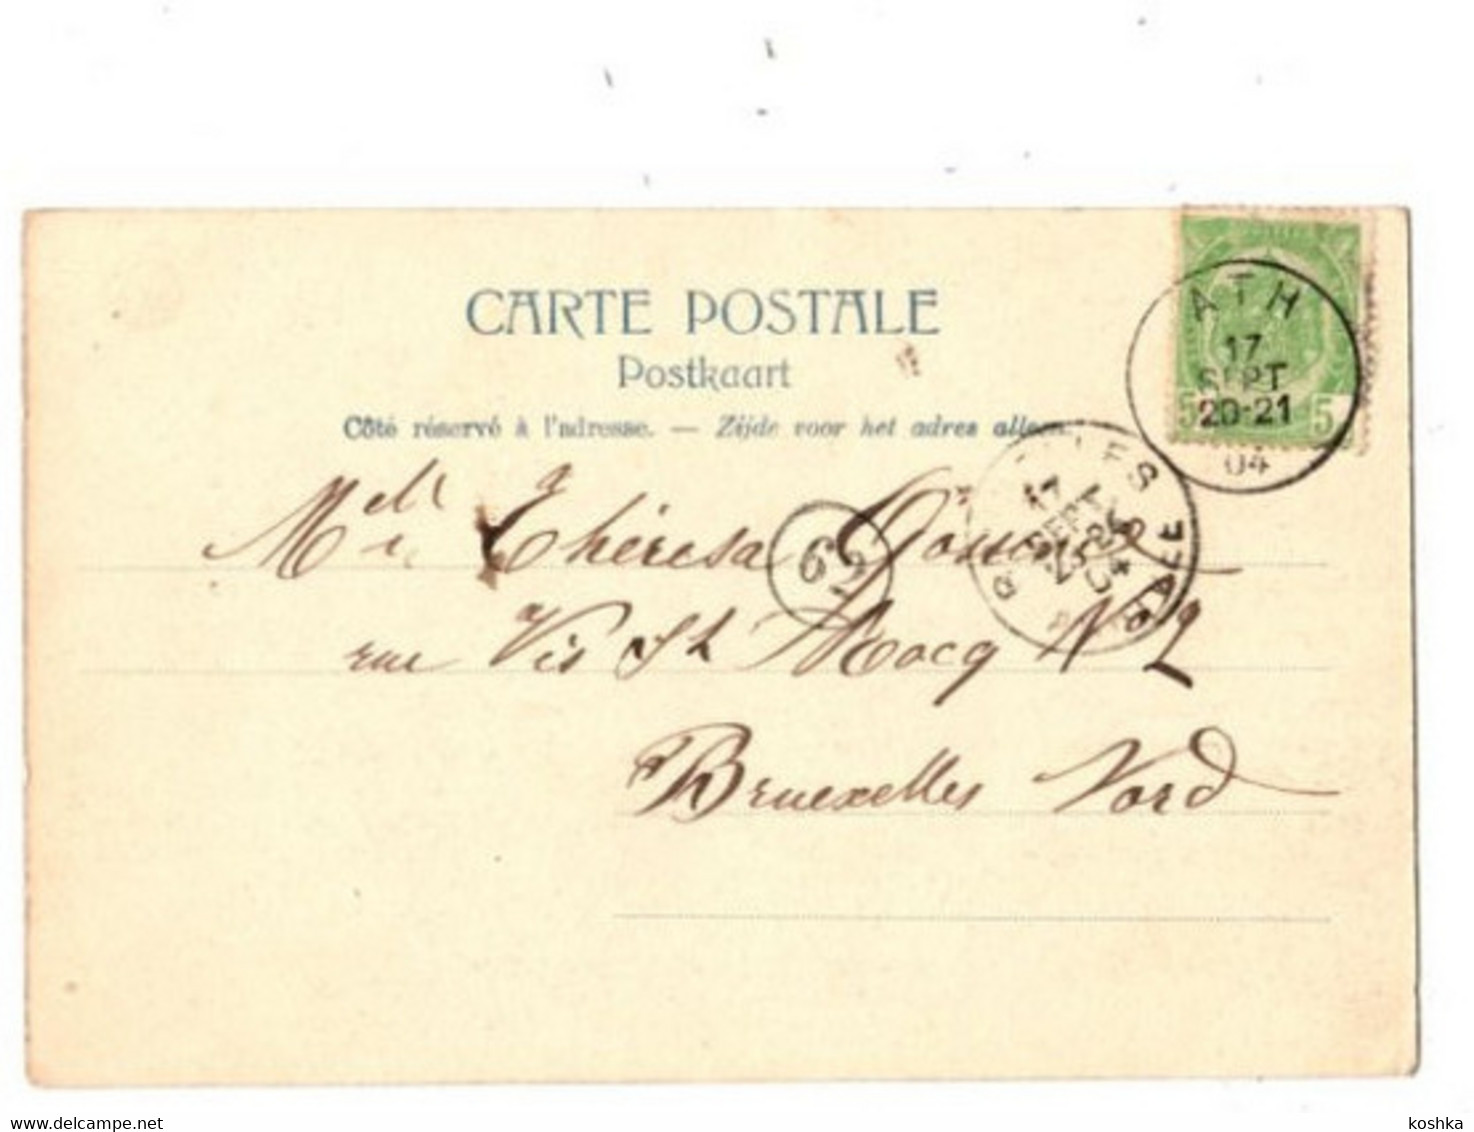 TONGRE NOTRE DAME - Château Du Jardin - Envoyée En 1904 - édit Nels Ser 78 No 50 - K - Chièvres